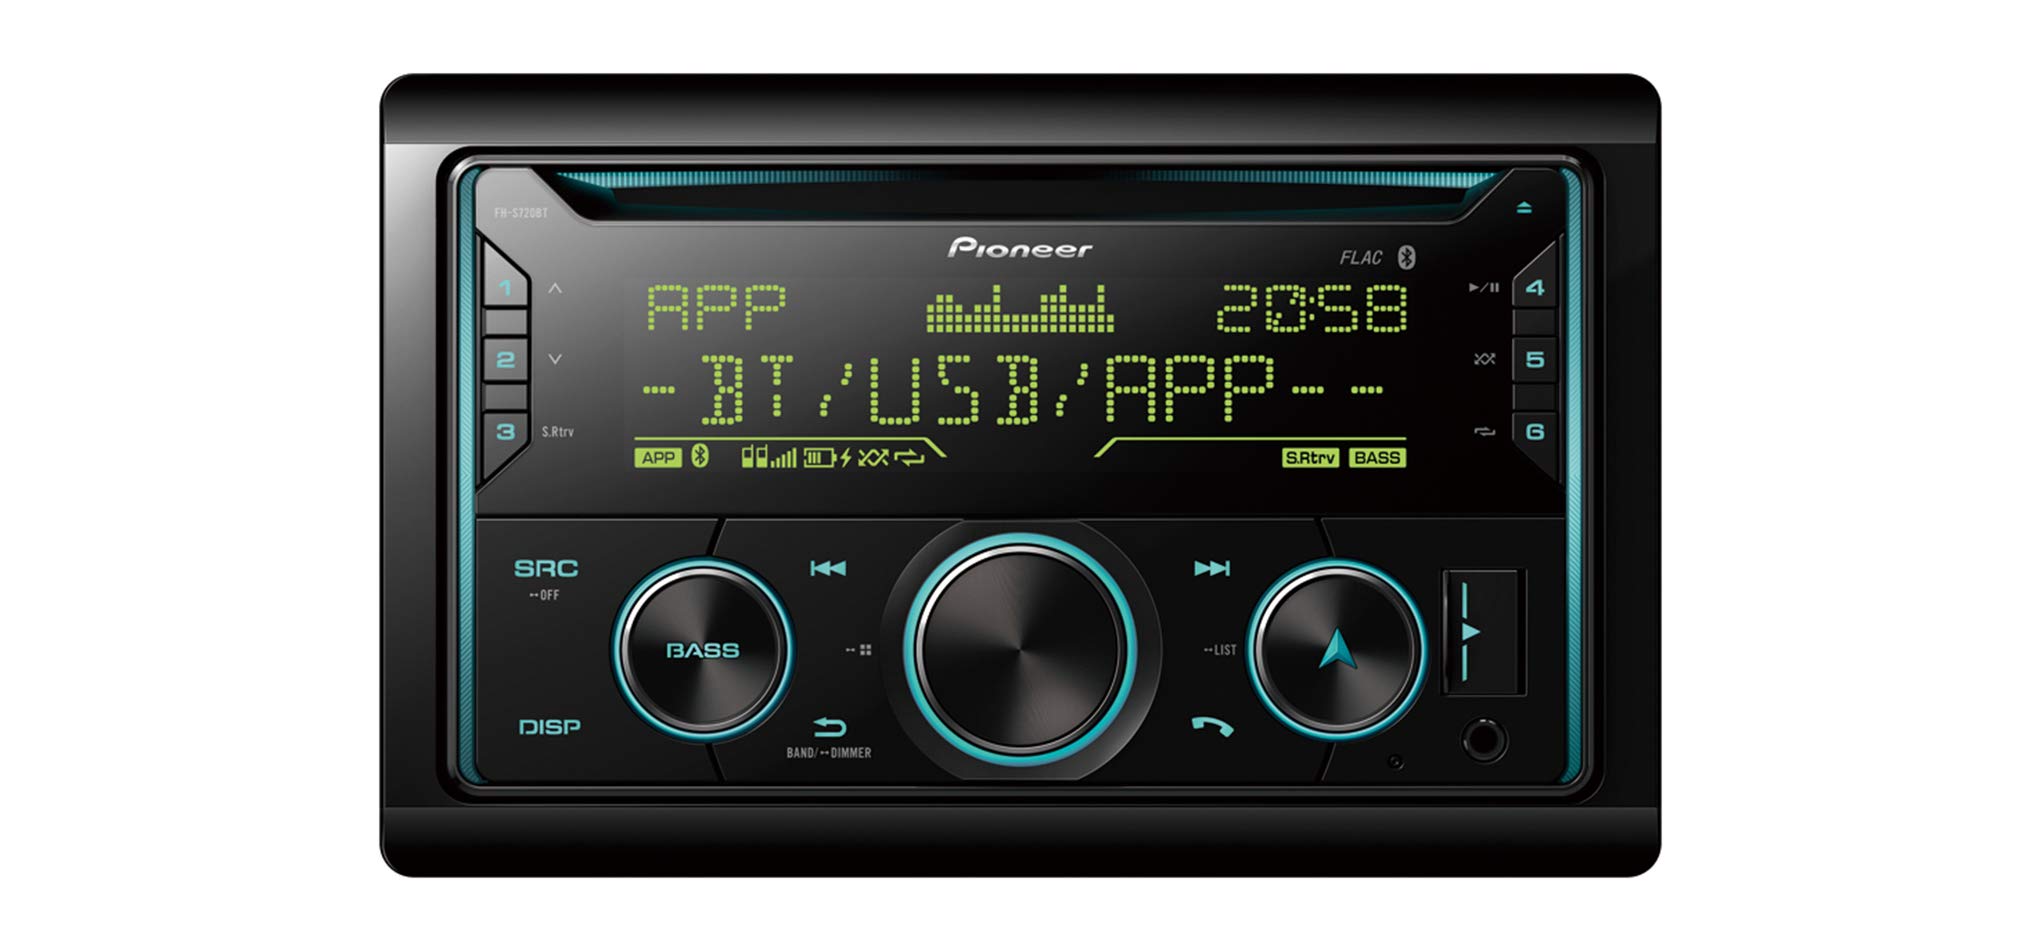 Pioneer FH-S720DAB FH-S720BT CD-Autoradio 2DIN CD-Autoradio mit Bluetooth Freisprecheinrichtung, Front AUX & USB Anschluss